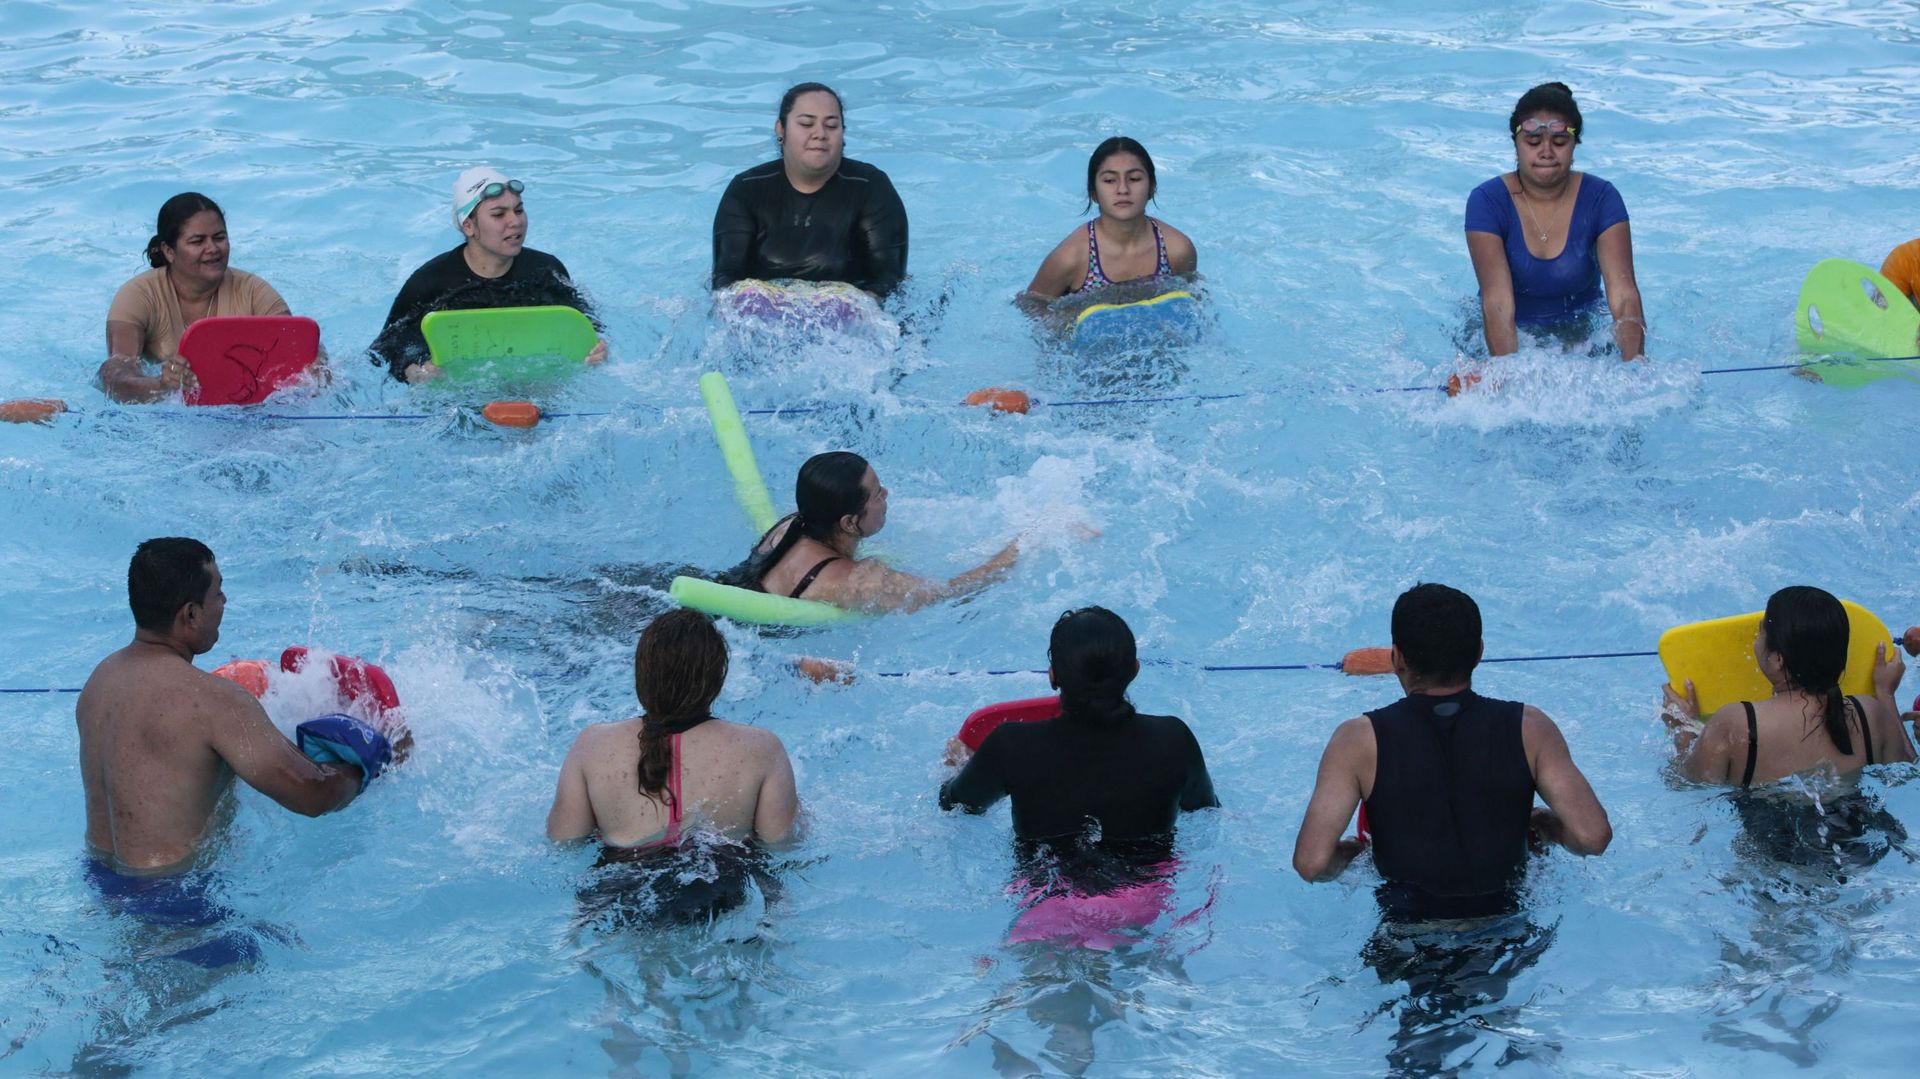 Hassivett Rivera nage pendant que ses compagnons simulent une vague lors d'une séance d'entraînement dans une piscine à Esteli, au Nicaragua, le 1er avril 2022.